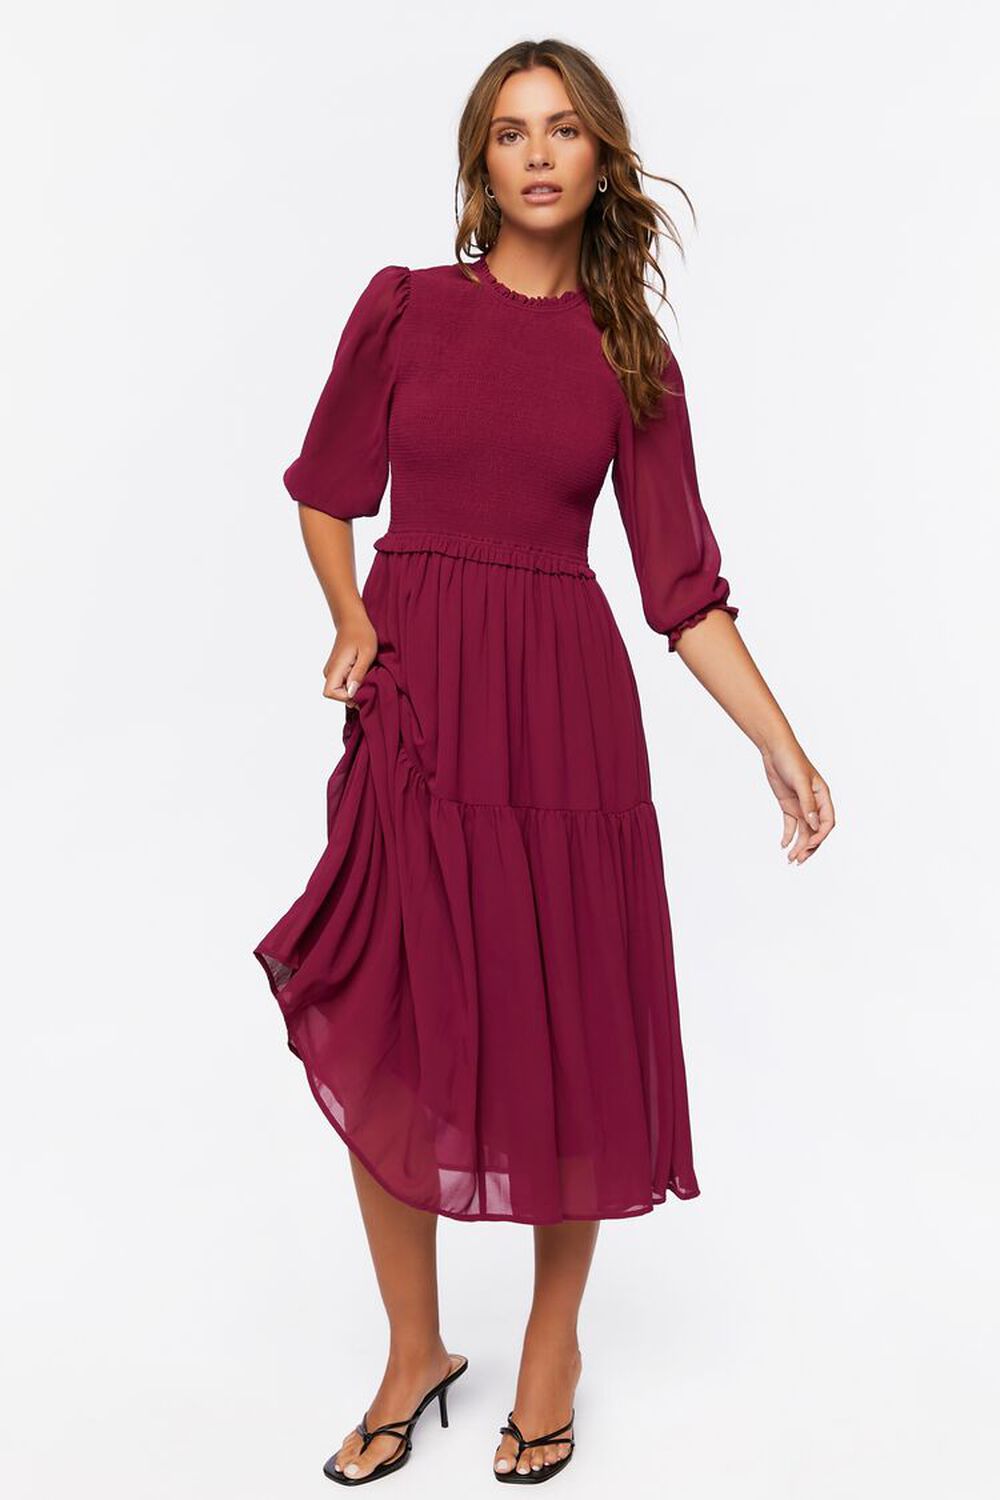 WINE Smocked Peasant-Sleeve Dress, image 1